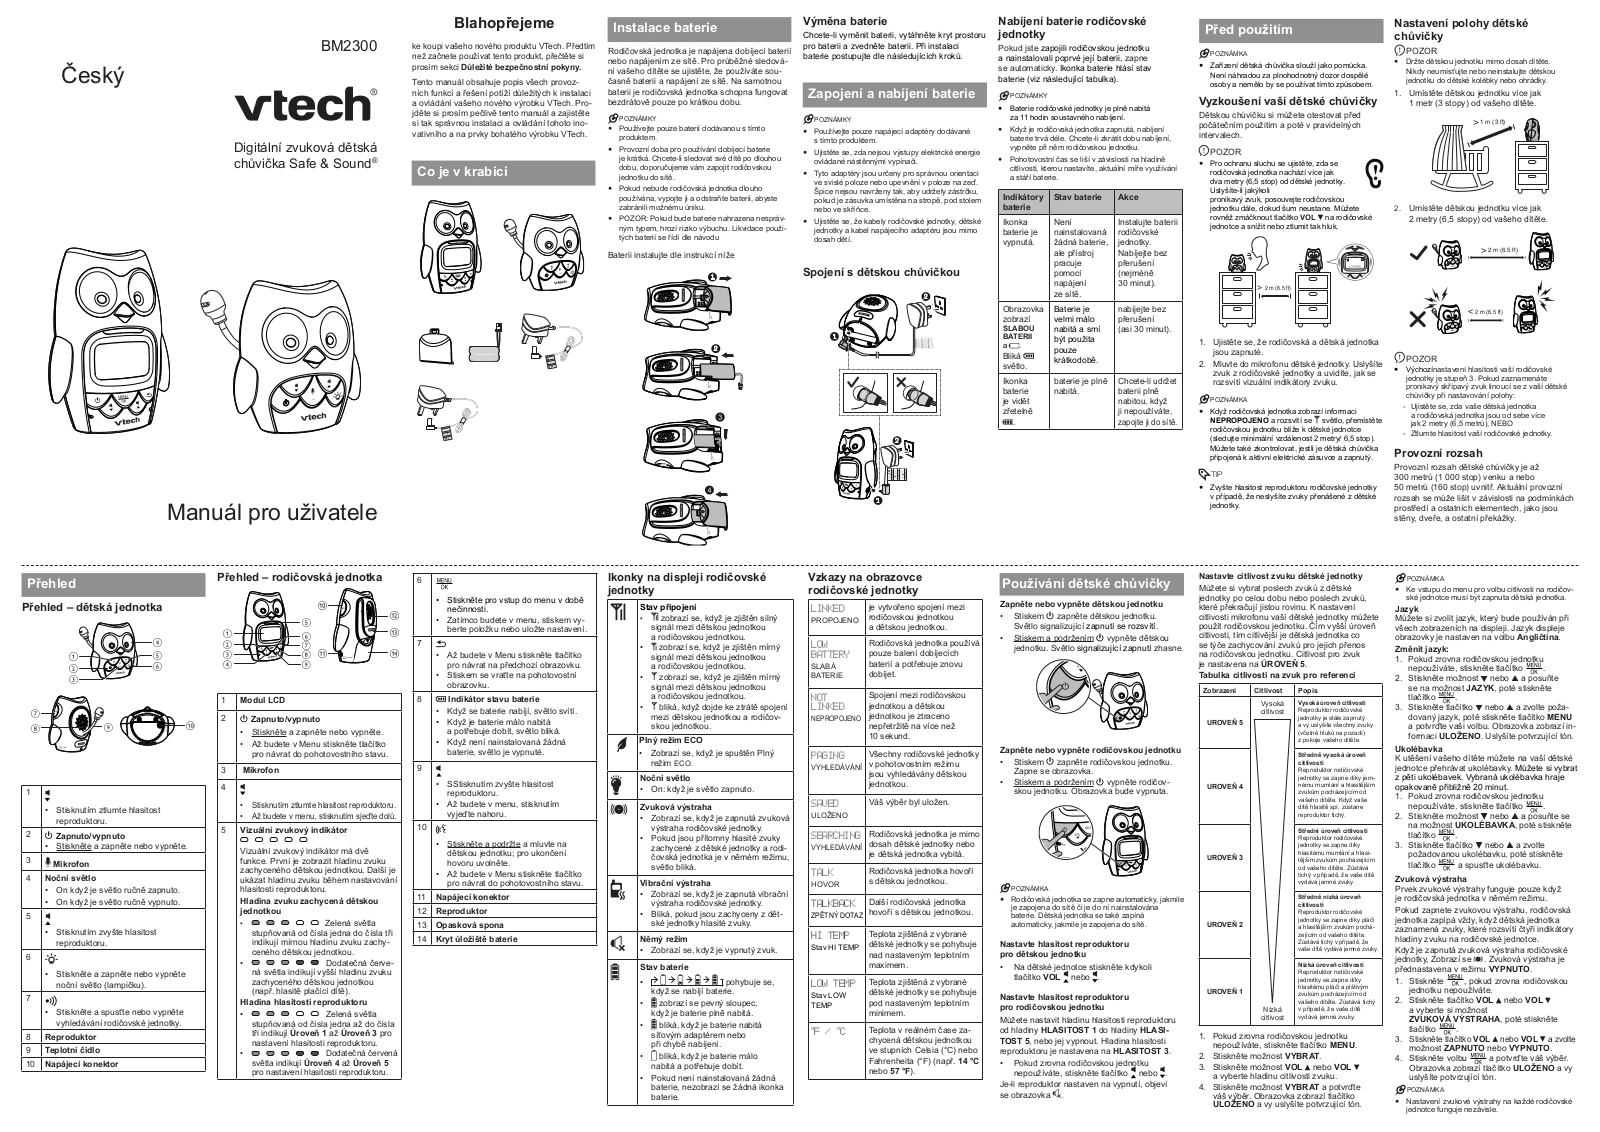 Vtech BM2300 User Manual